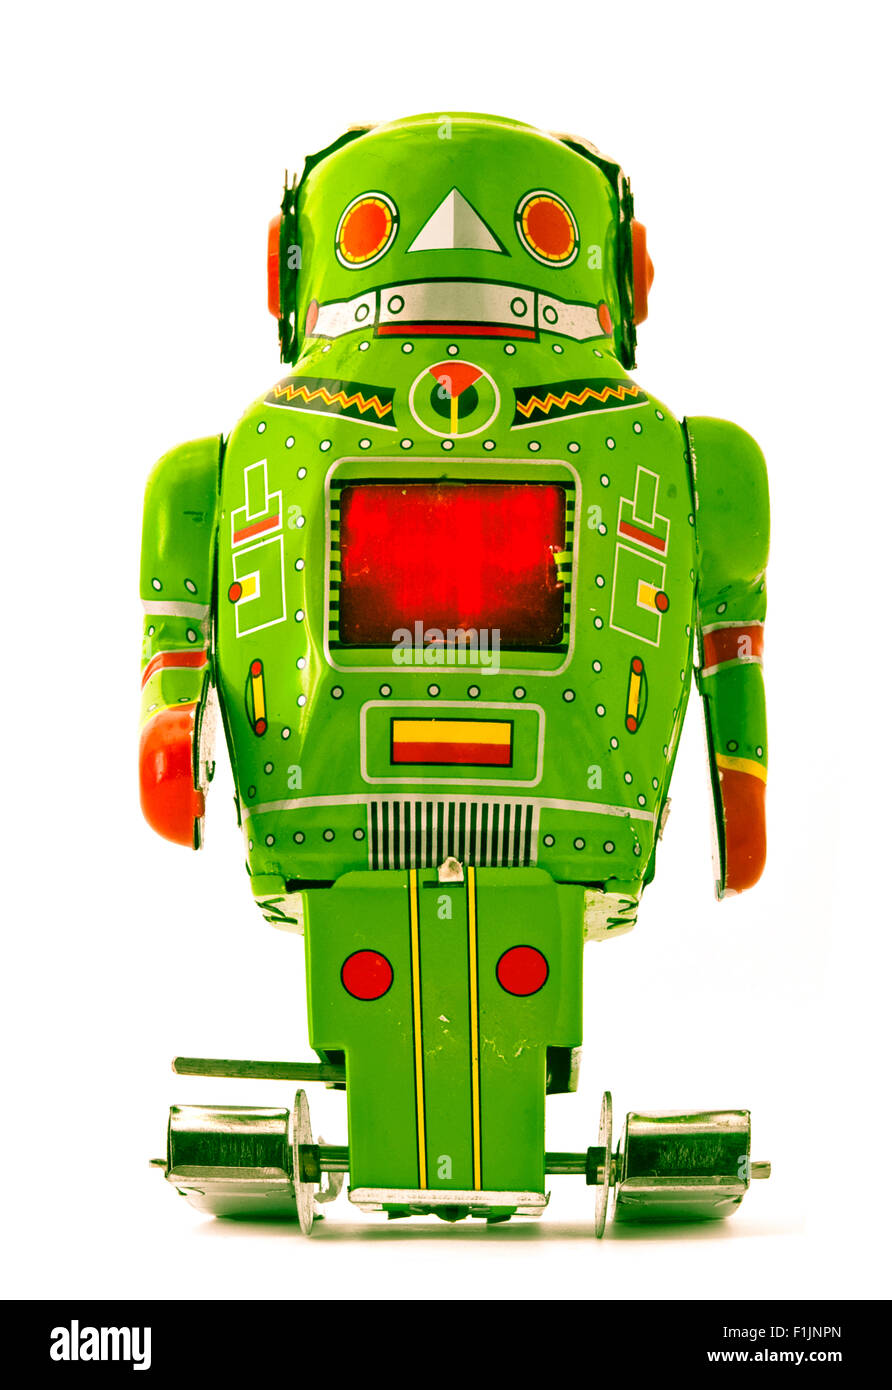 retro green robot toy Stock Photo - Alamy